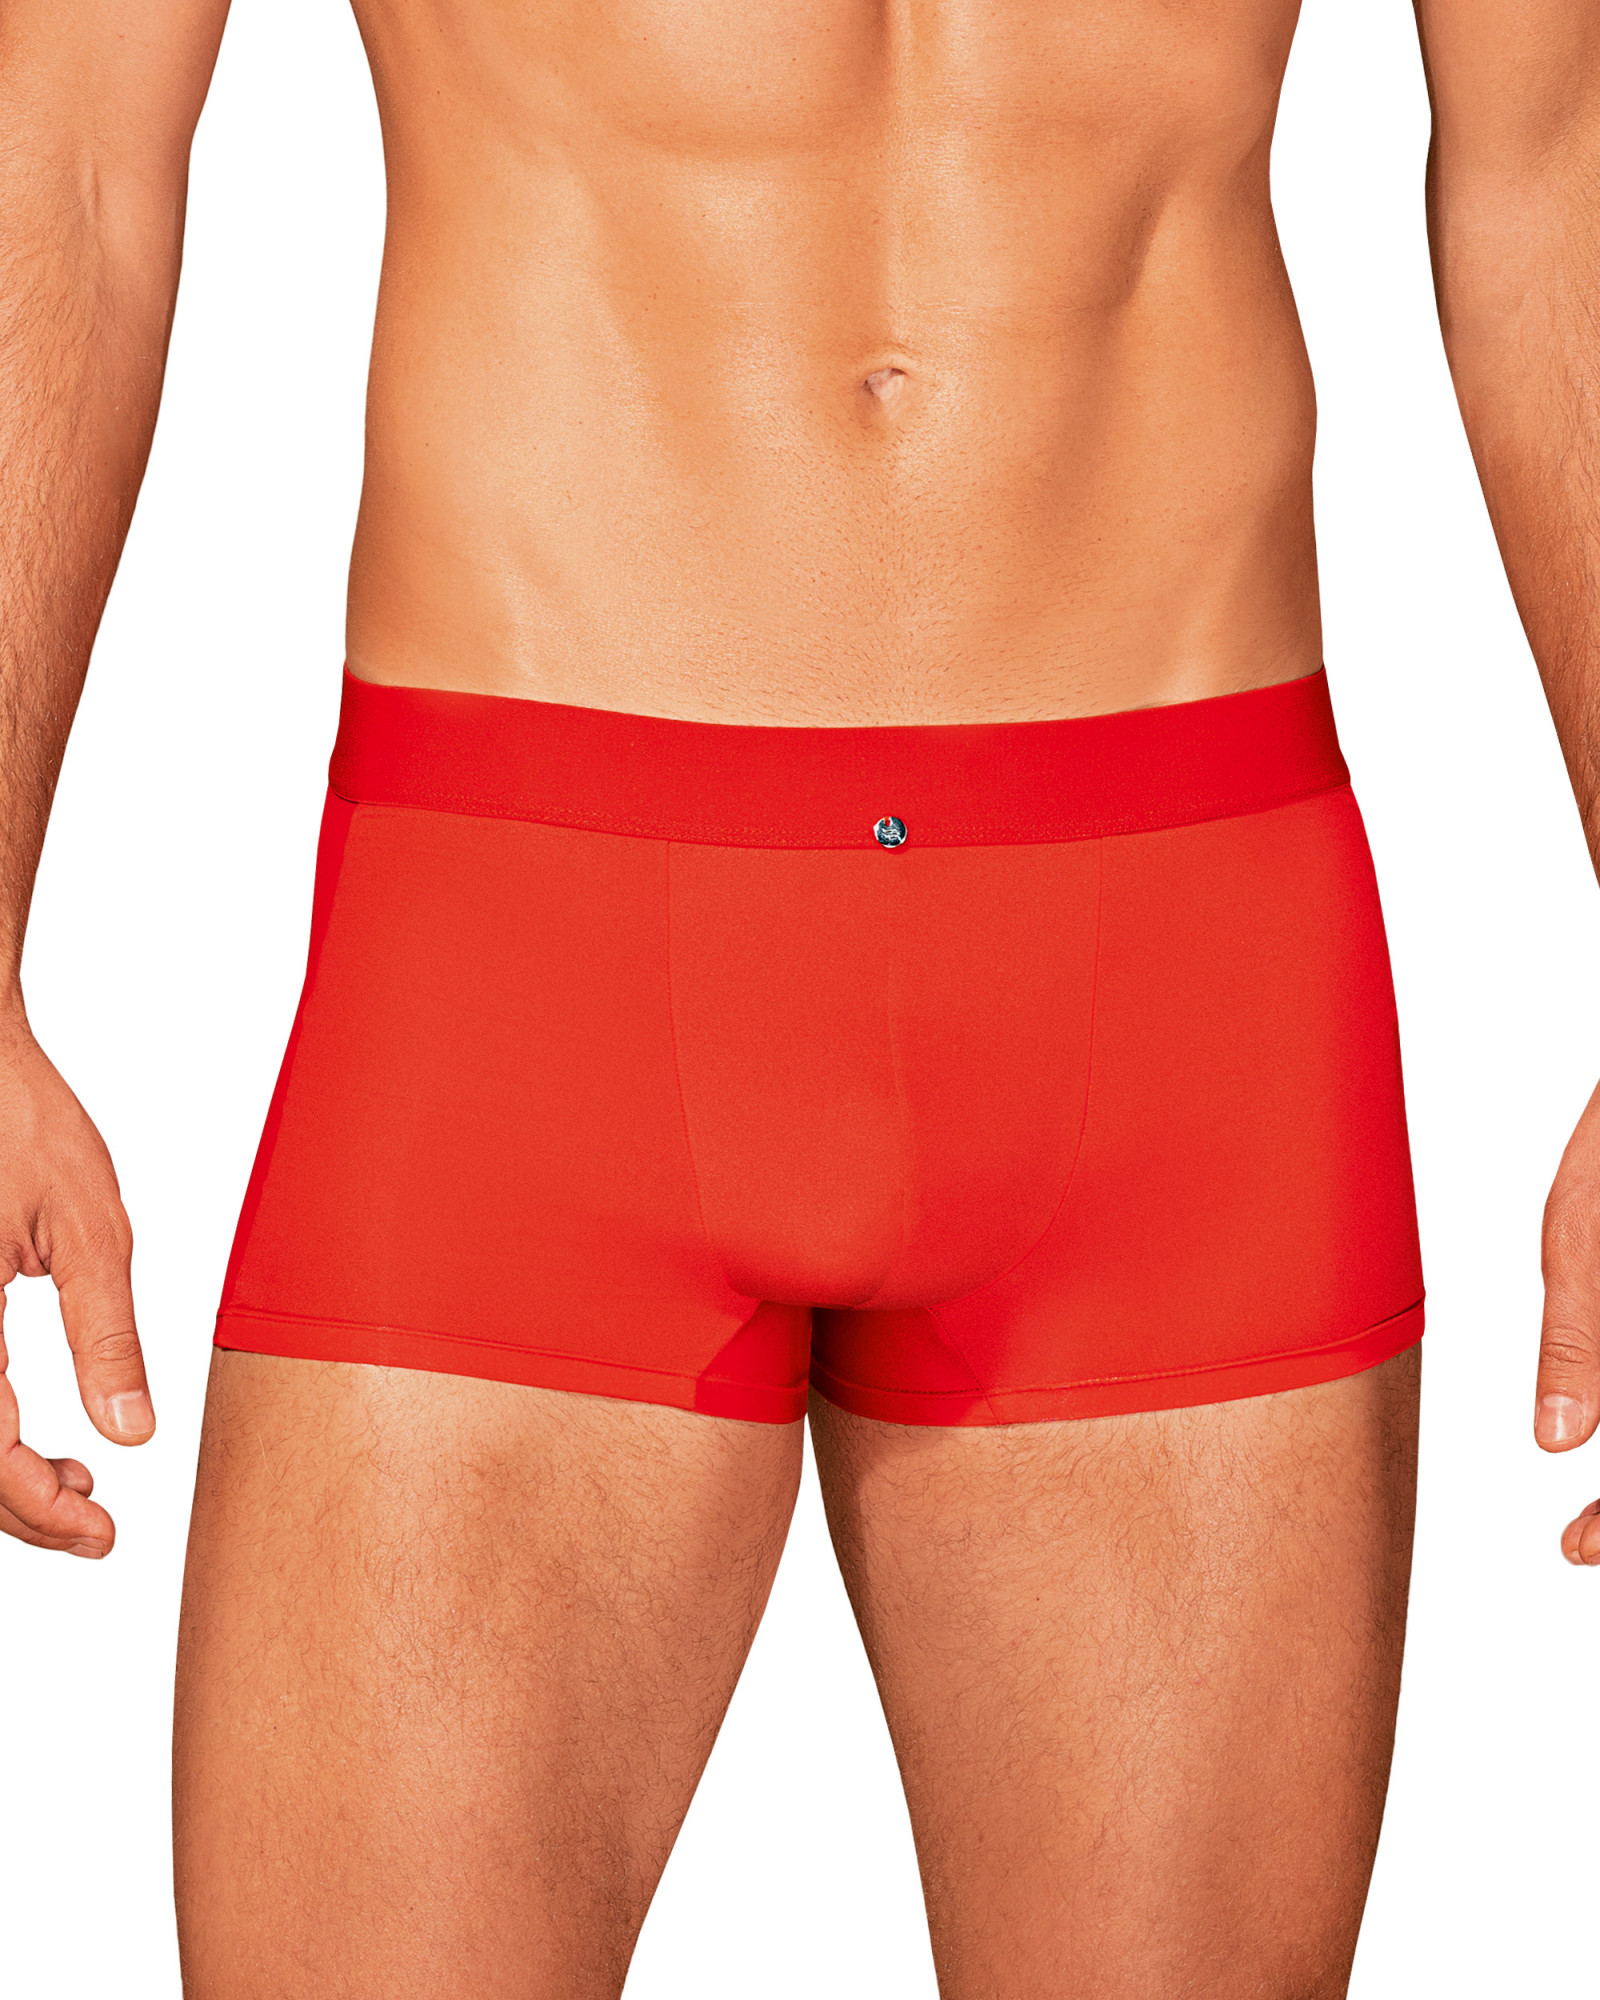 Pánské boxerky Boldero boxer shorts red - Obsessive červená L/XL